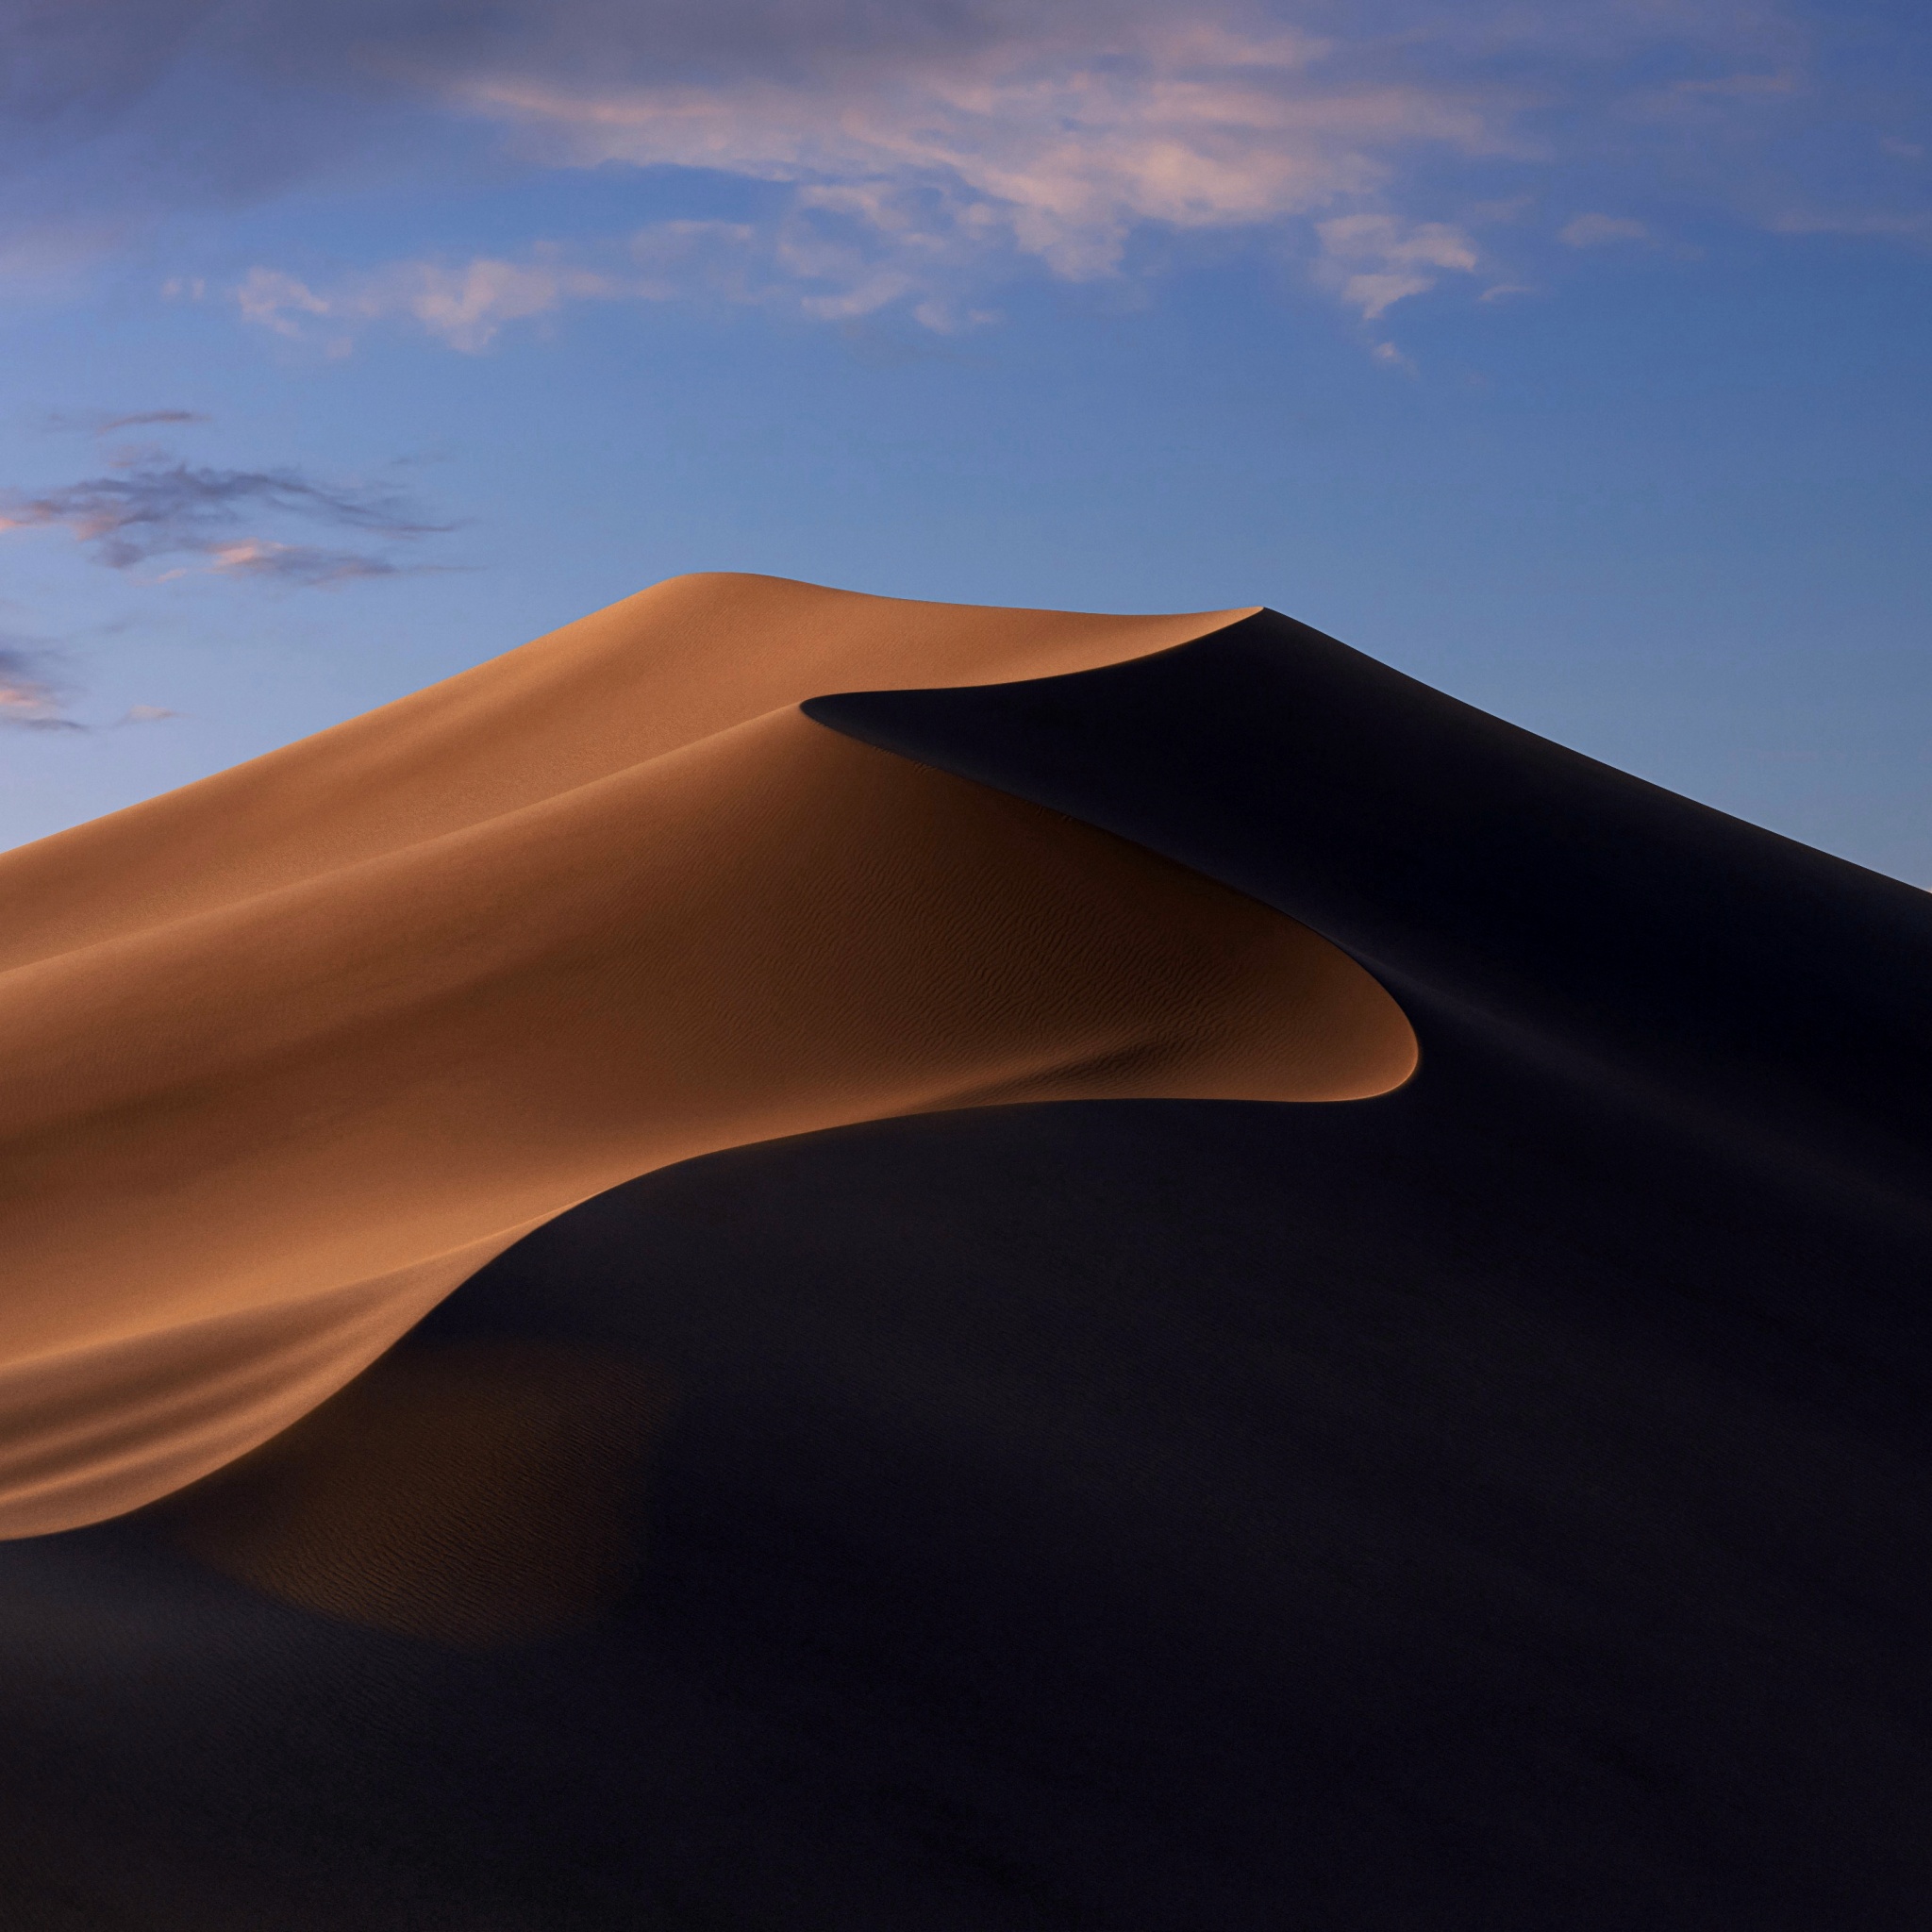 macOS Mojave Wallpaper 4K, Sand Dunes, Mojave Desert